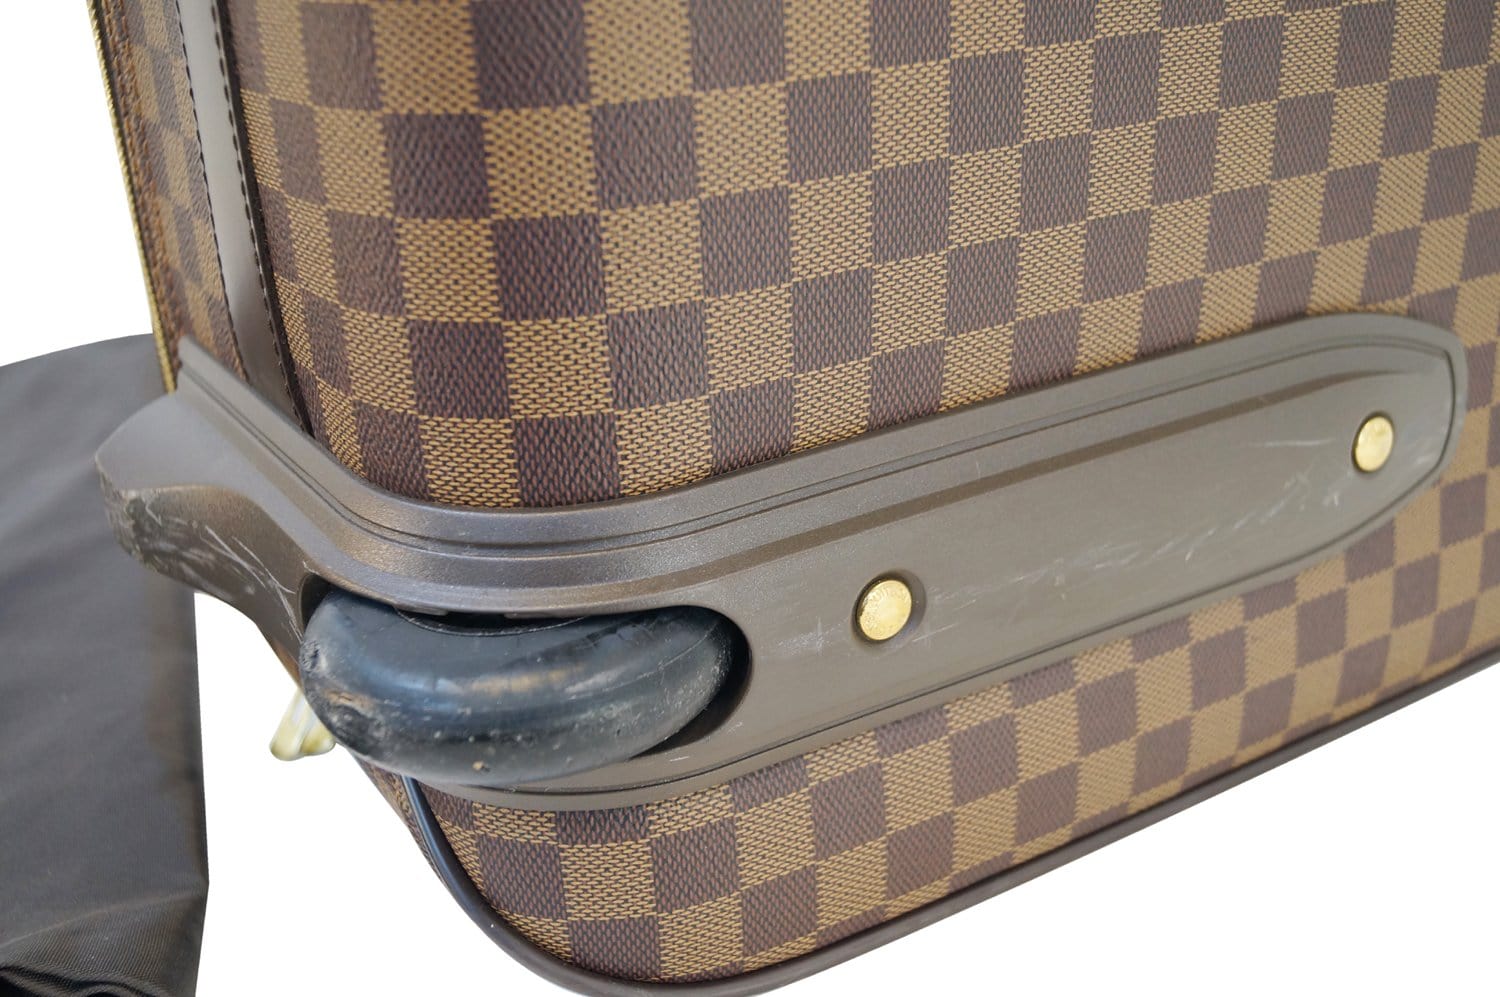 At Auction: 2 pcs. Louis Vuitton Luggage, Pegase Damier 55 & Damier Ebene  Eole Convertible Duffle